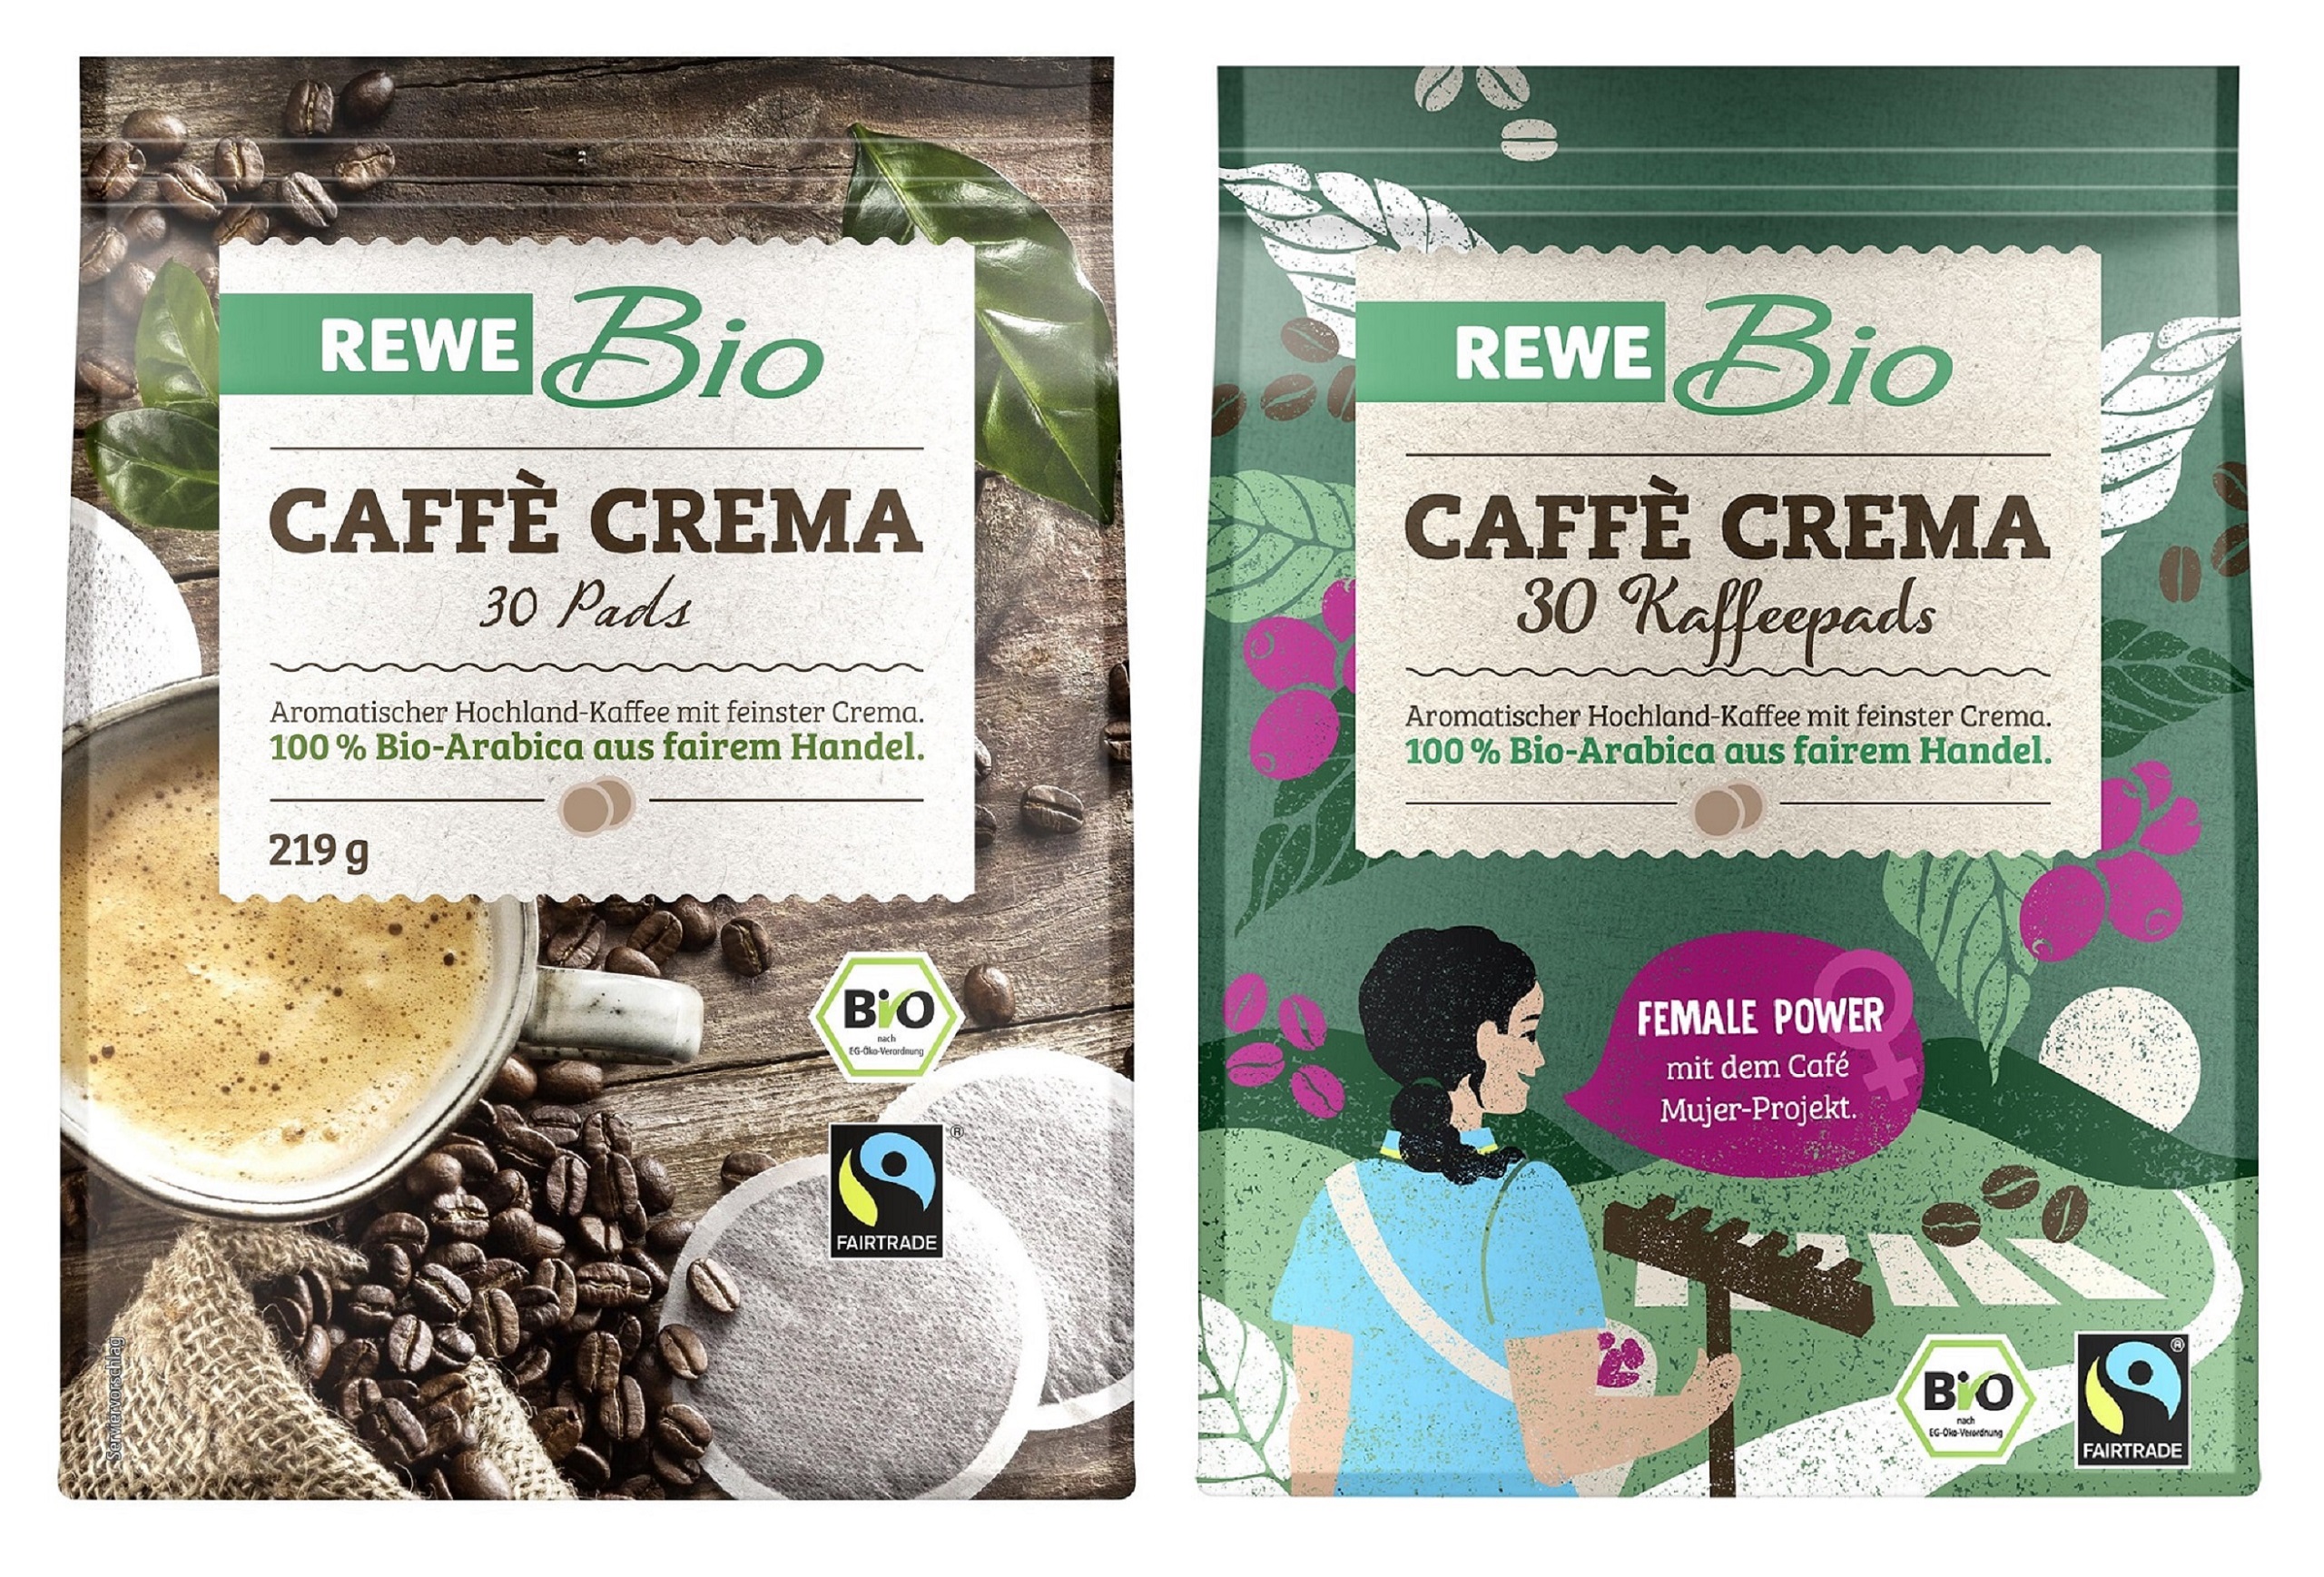 Abbildungen der alten und neuen REWE Caffé Crema Pads im Fairtrade-Design.